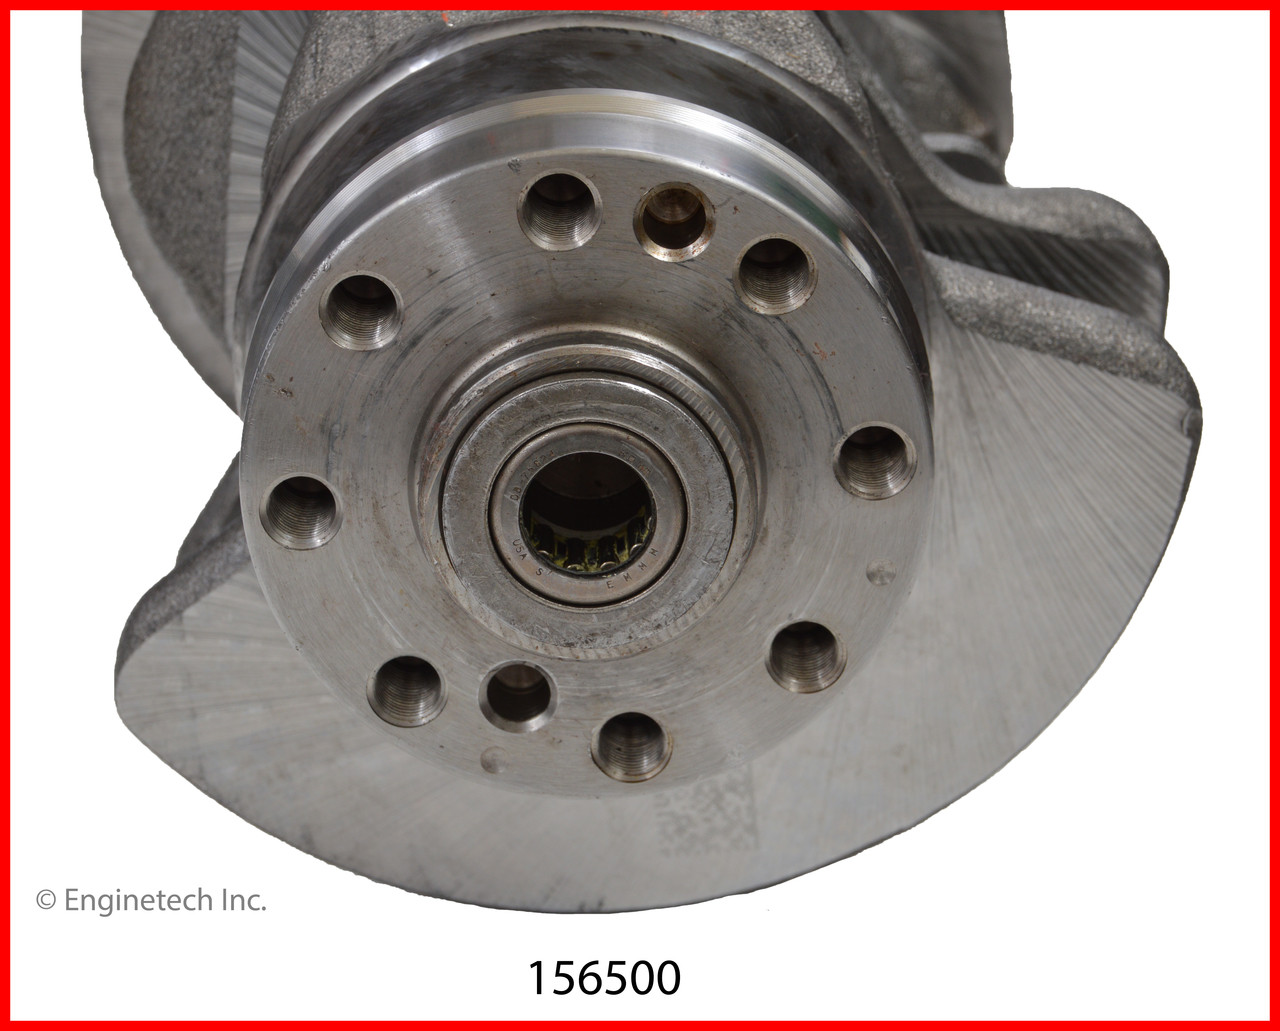 Crankshaft Kit - 2014 Ford Edge 3.5L (156500.E50)